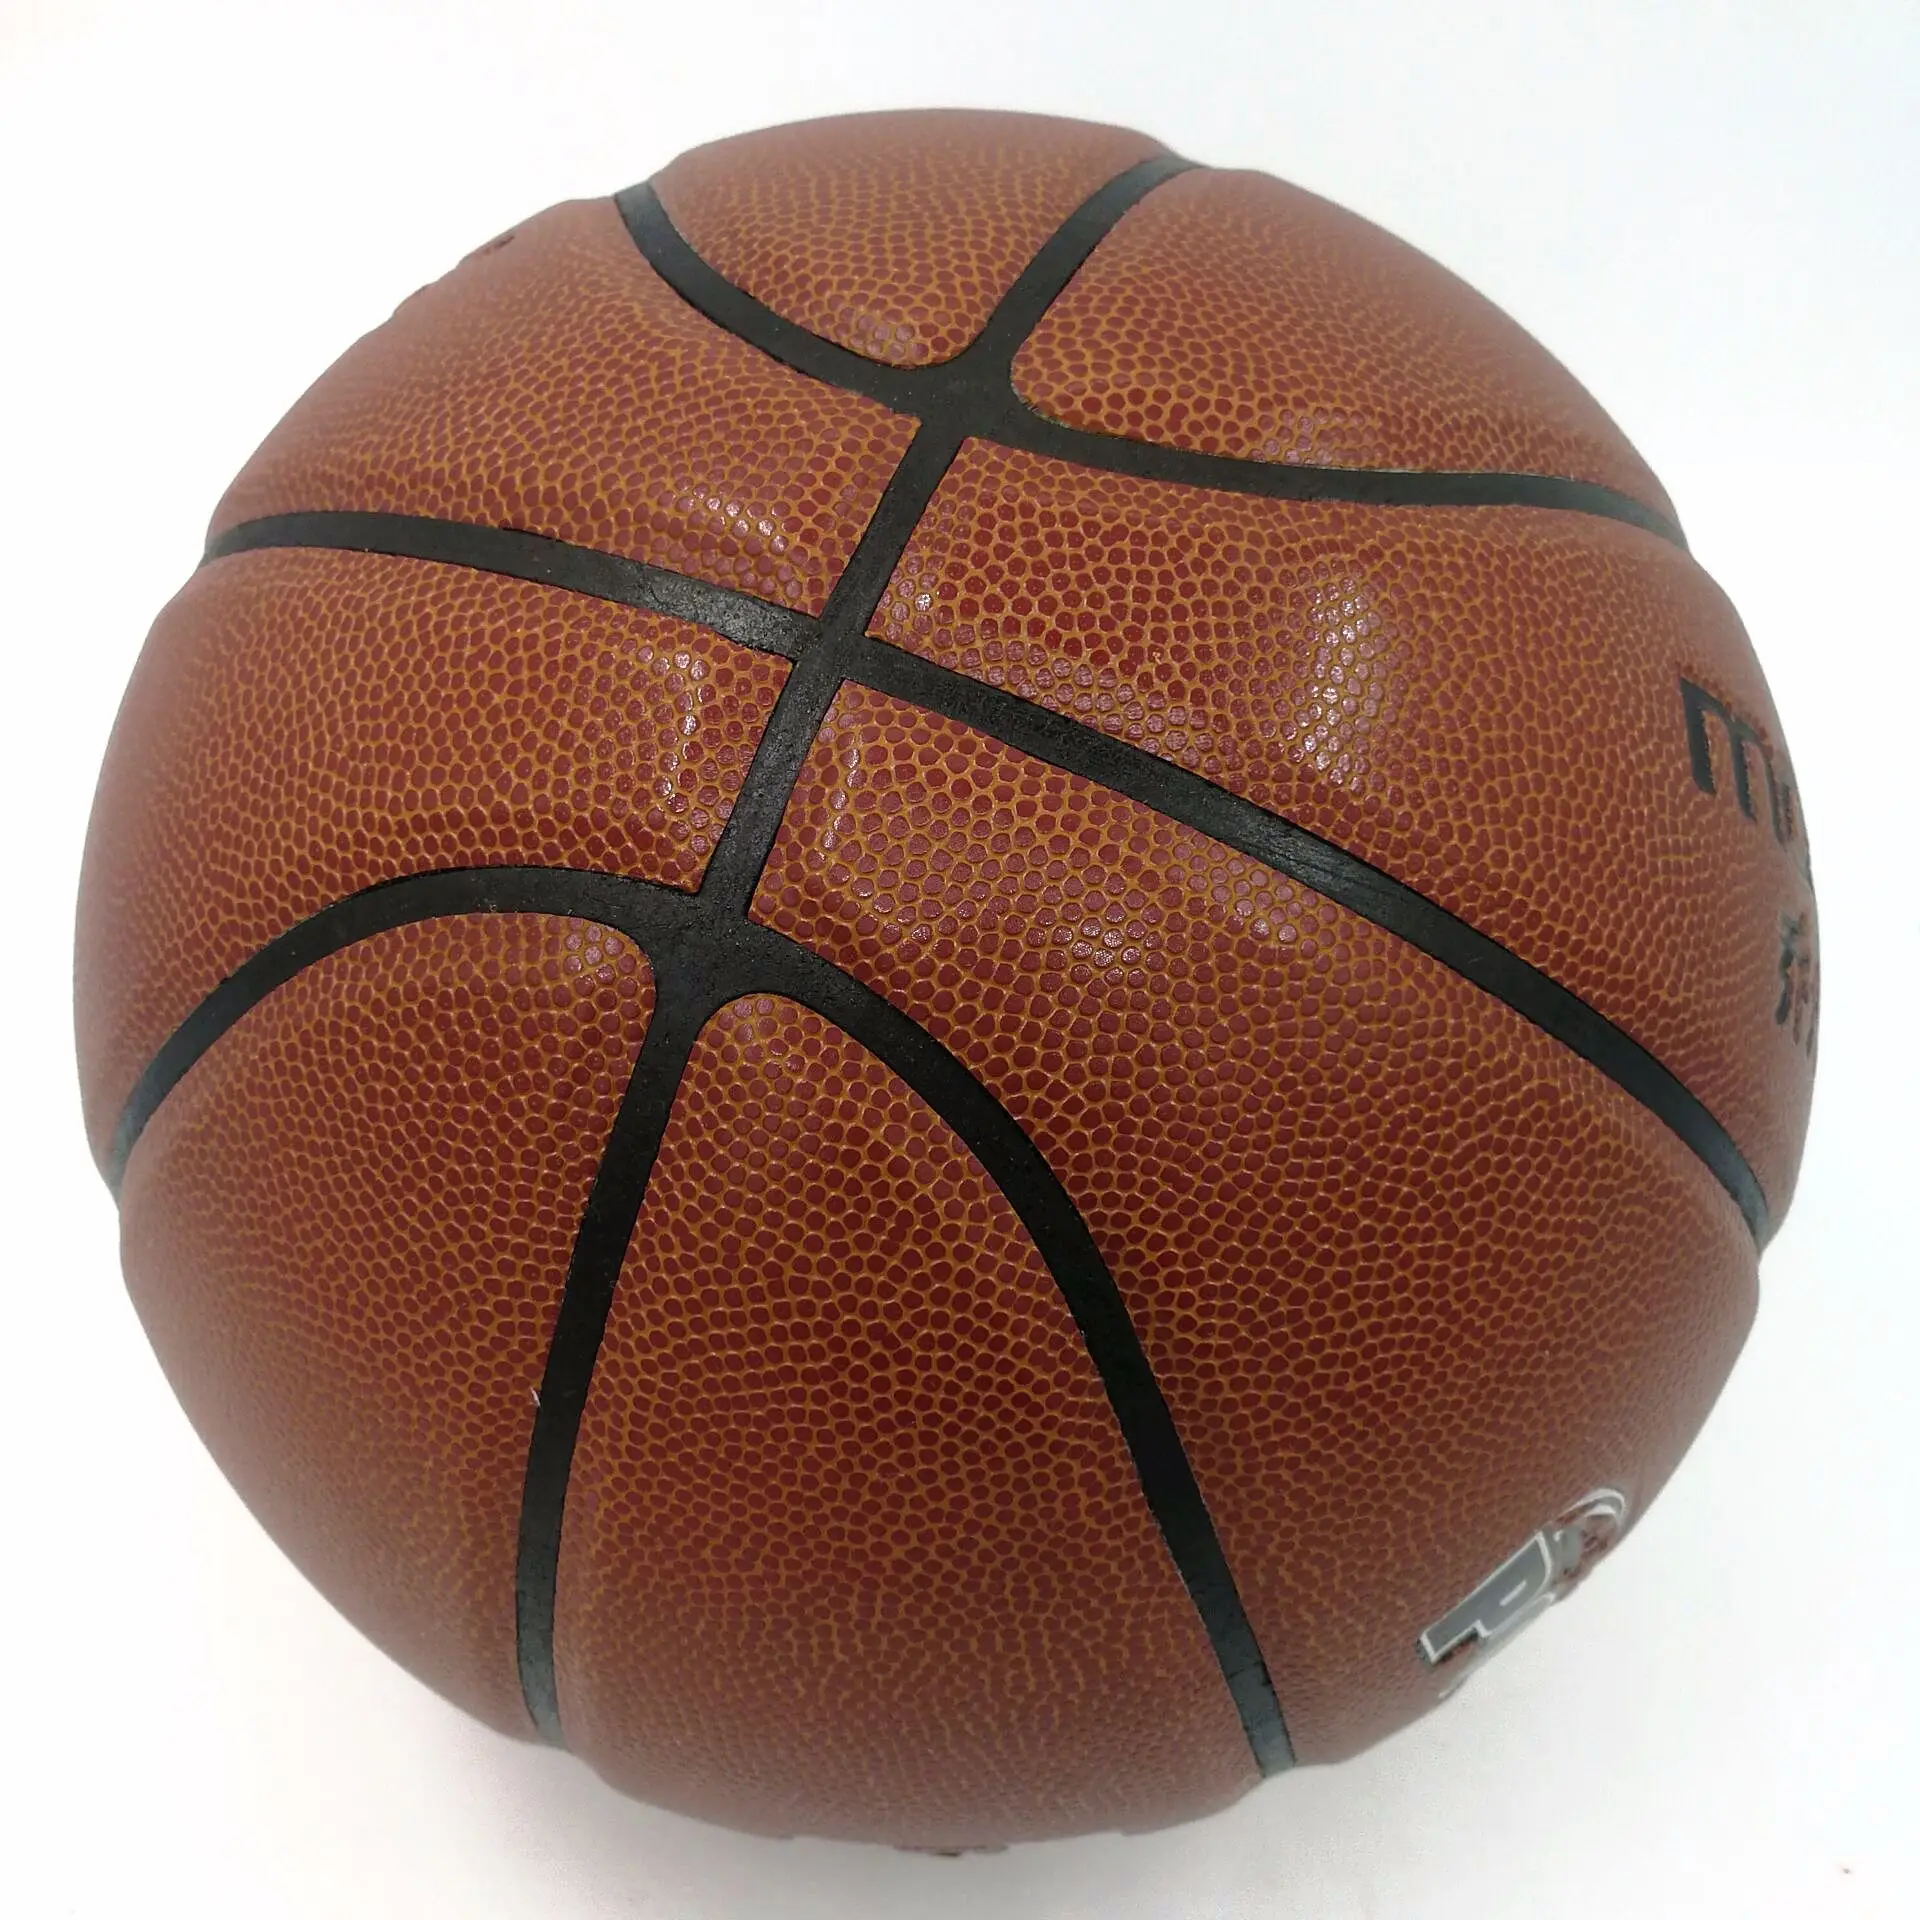 MGB. jdng Nike Air Jordan баскетбольная № 7 для взрослых и детей в помещении и на открытом воздухе игры шарик из ПУ 661 противоскользящая износостойкая Handfee